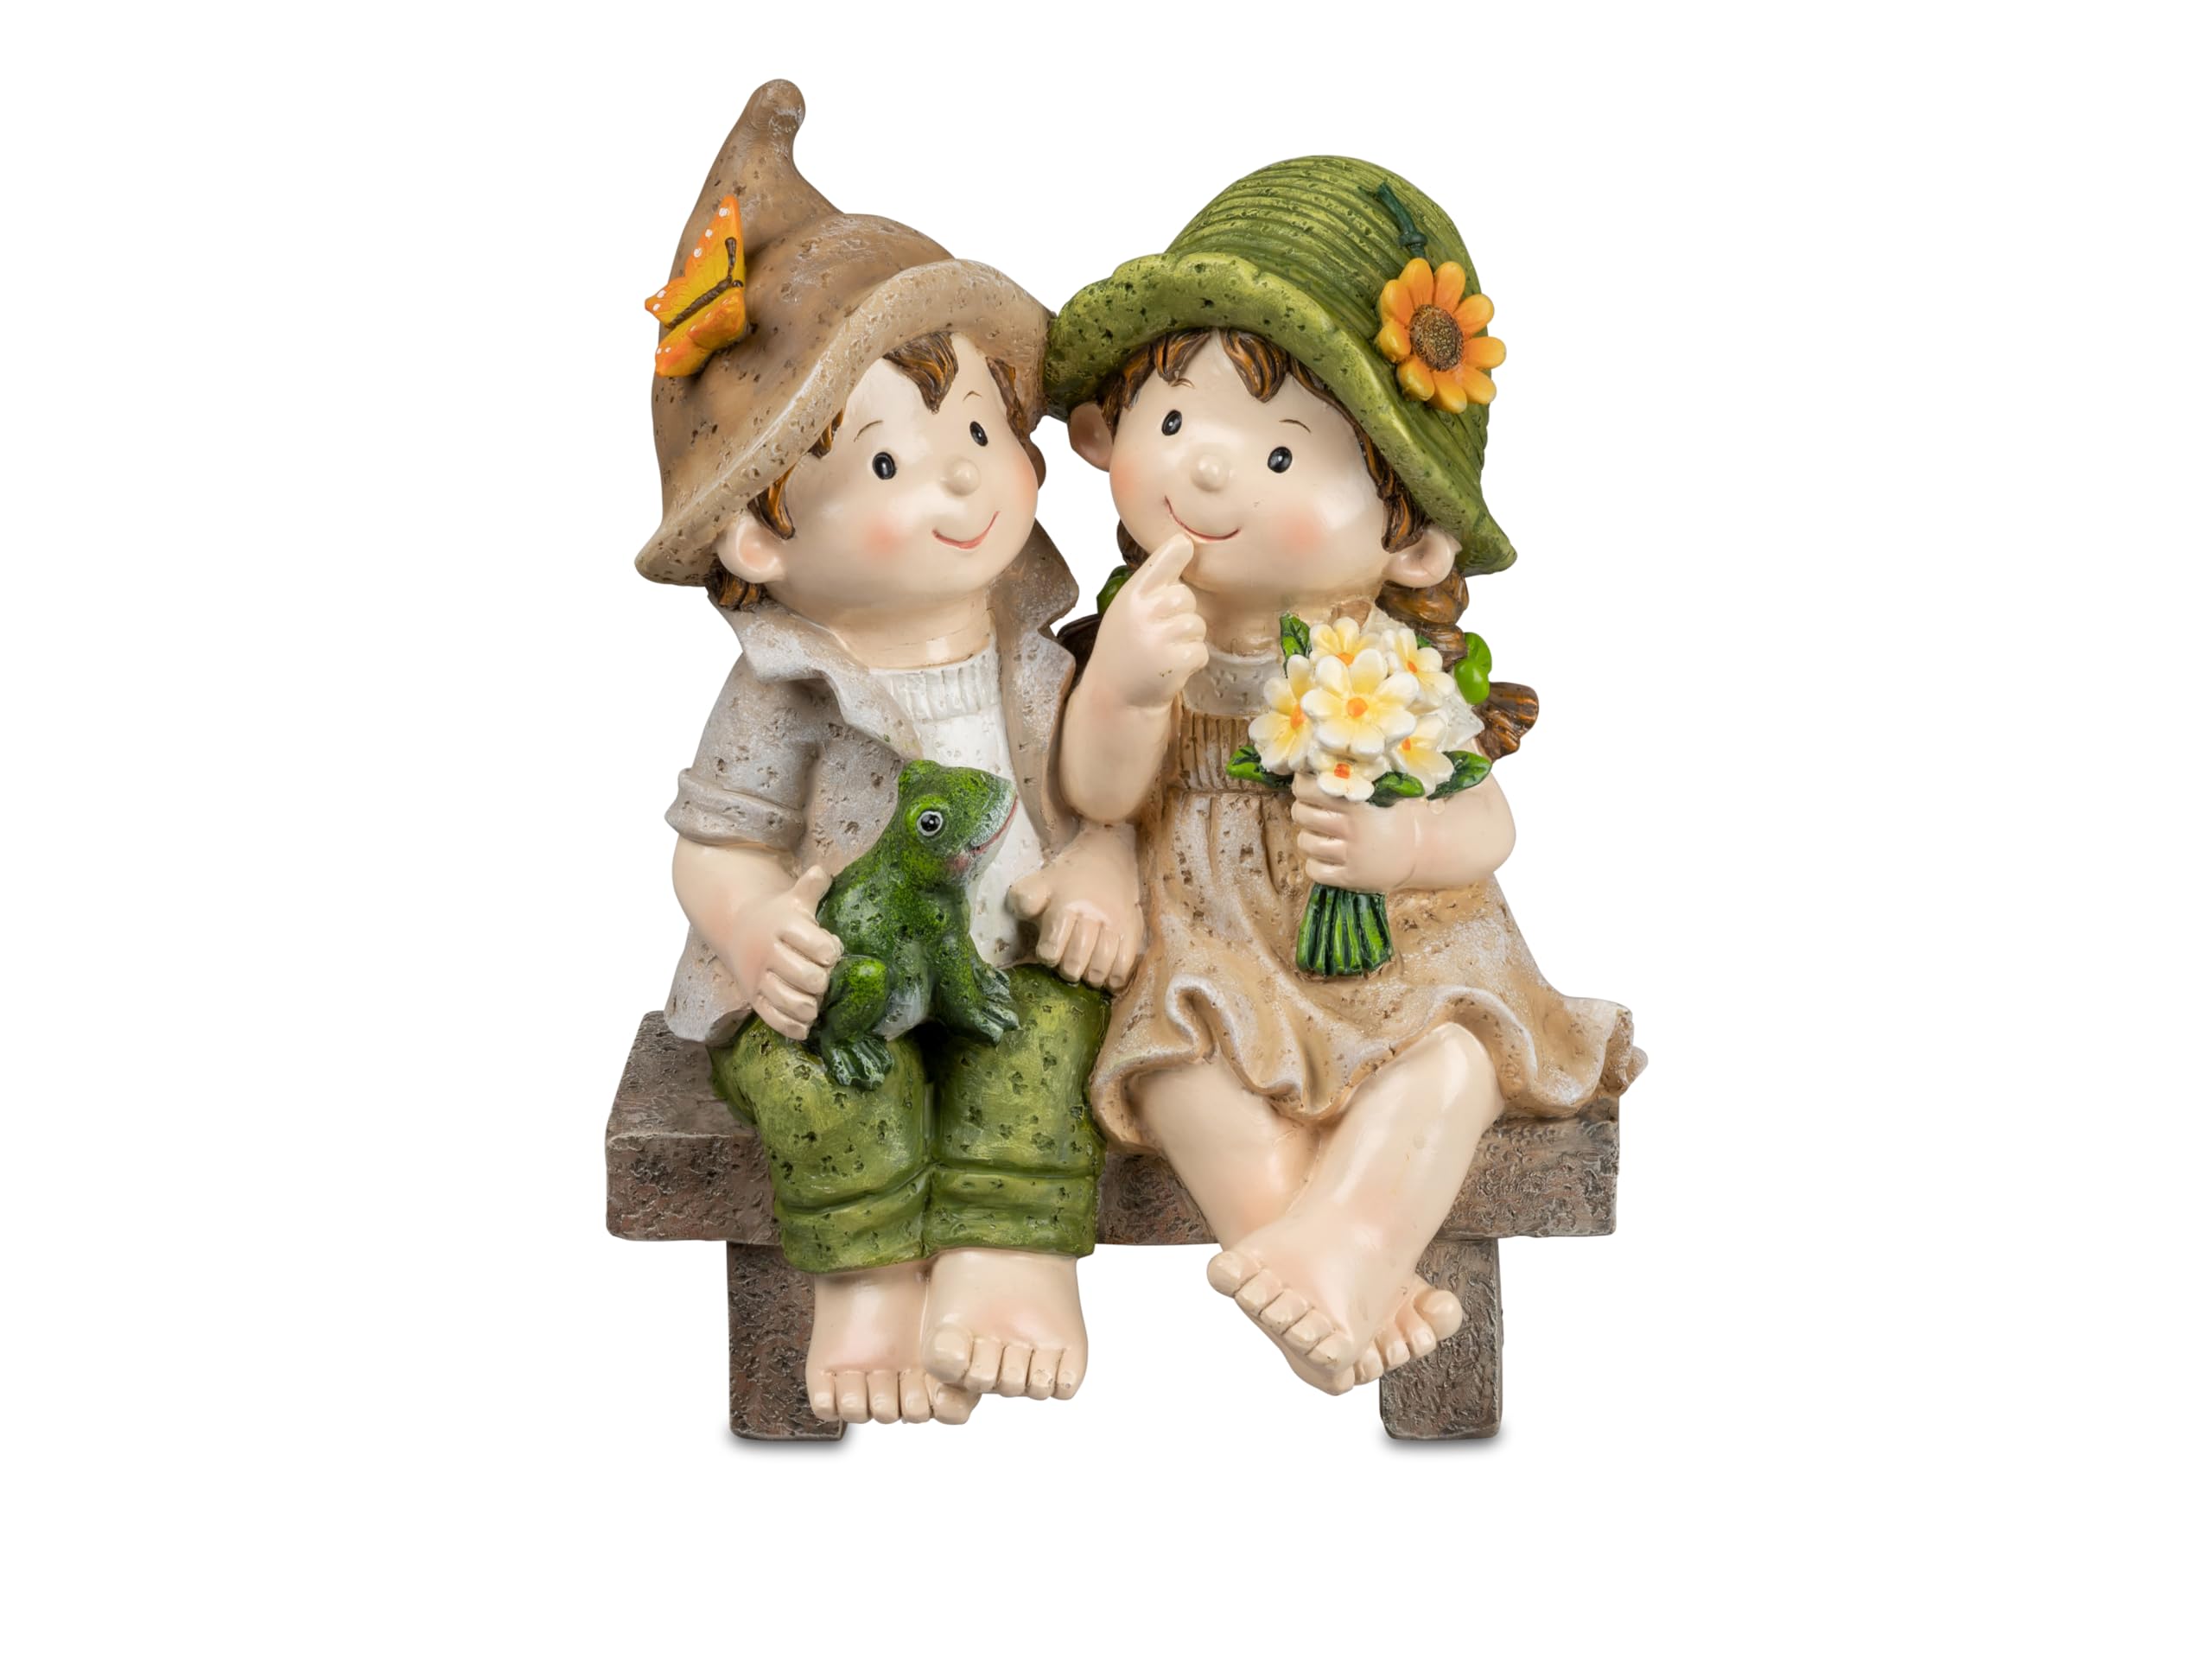 Small-Preis Deko-Figuren Sommerkinder Max und Lisa sitzend auf Bank Gartenkinder mit Blumen Frühjahrsdeko Sommerdeko für Innen und Außen 28x18cm groß 219